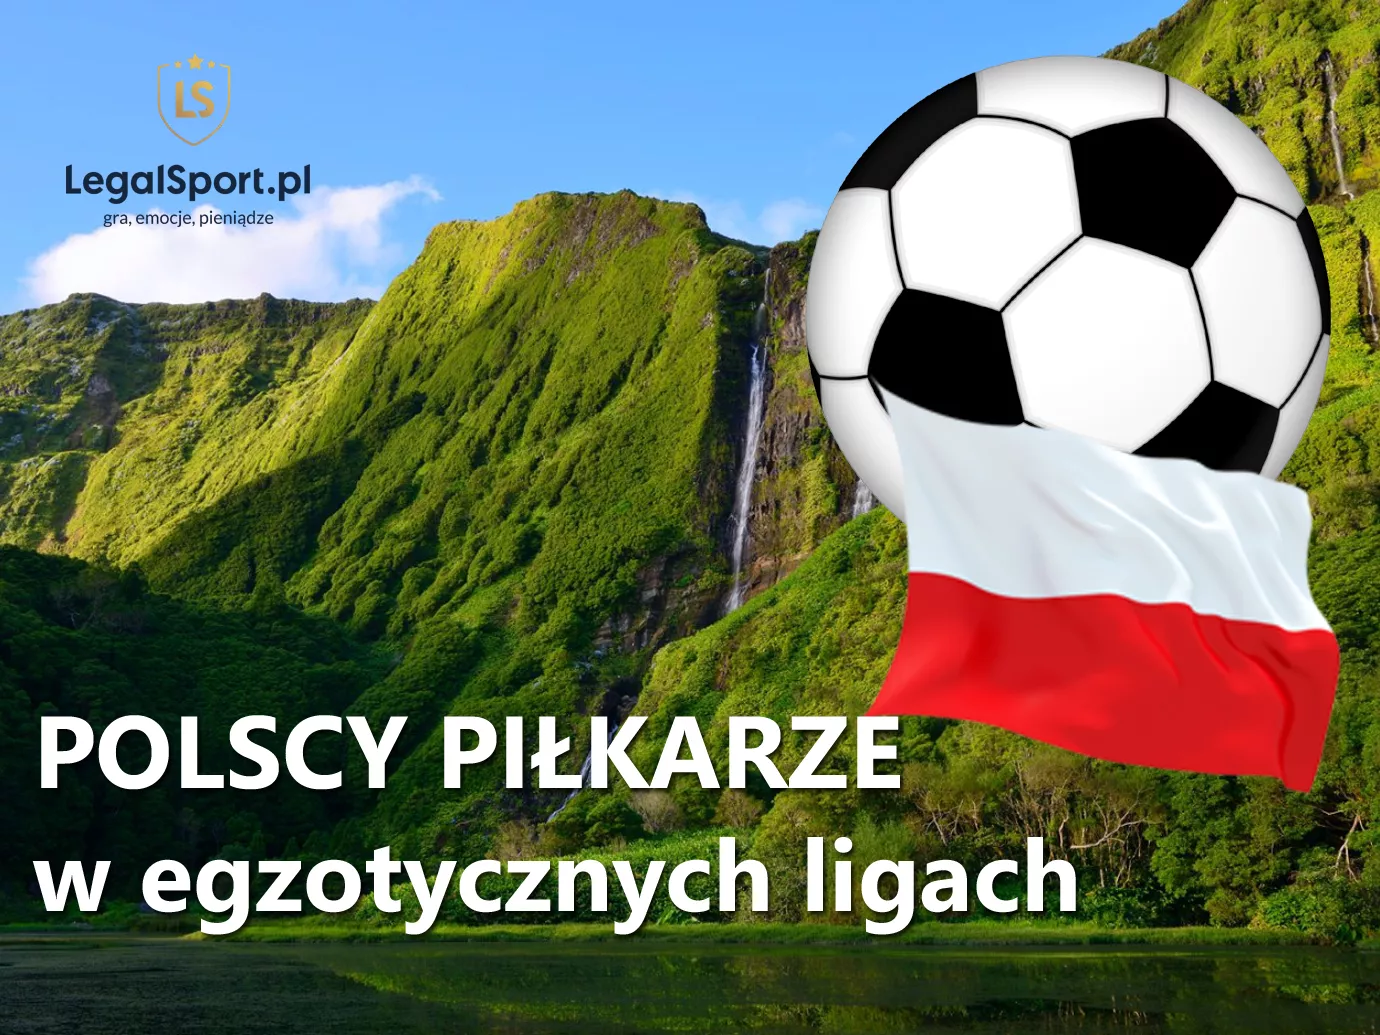 Polacy w egzotycznych ligach piłkarskich